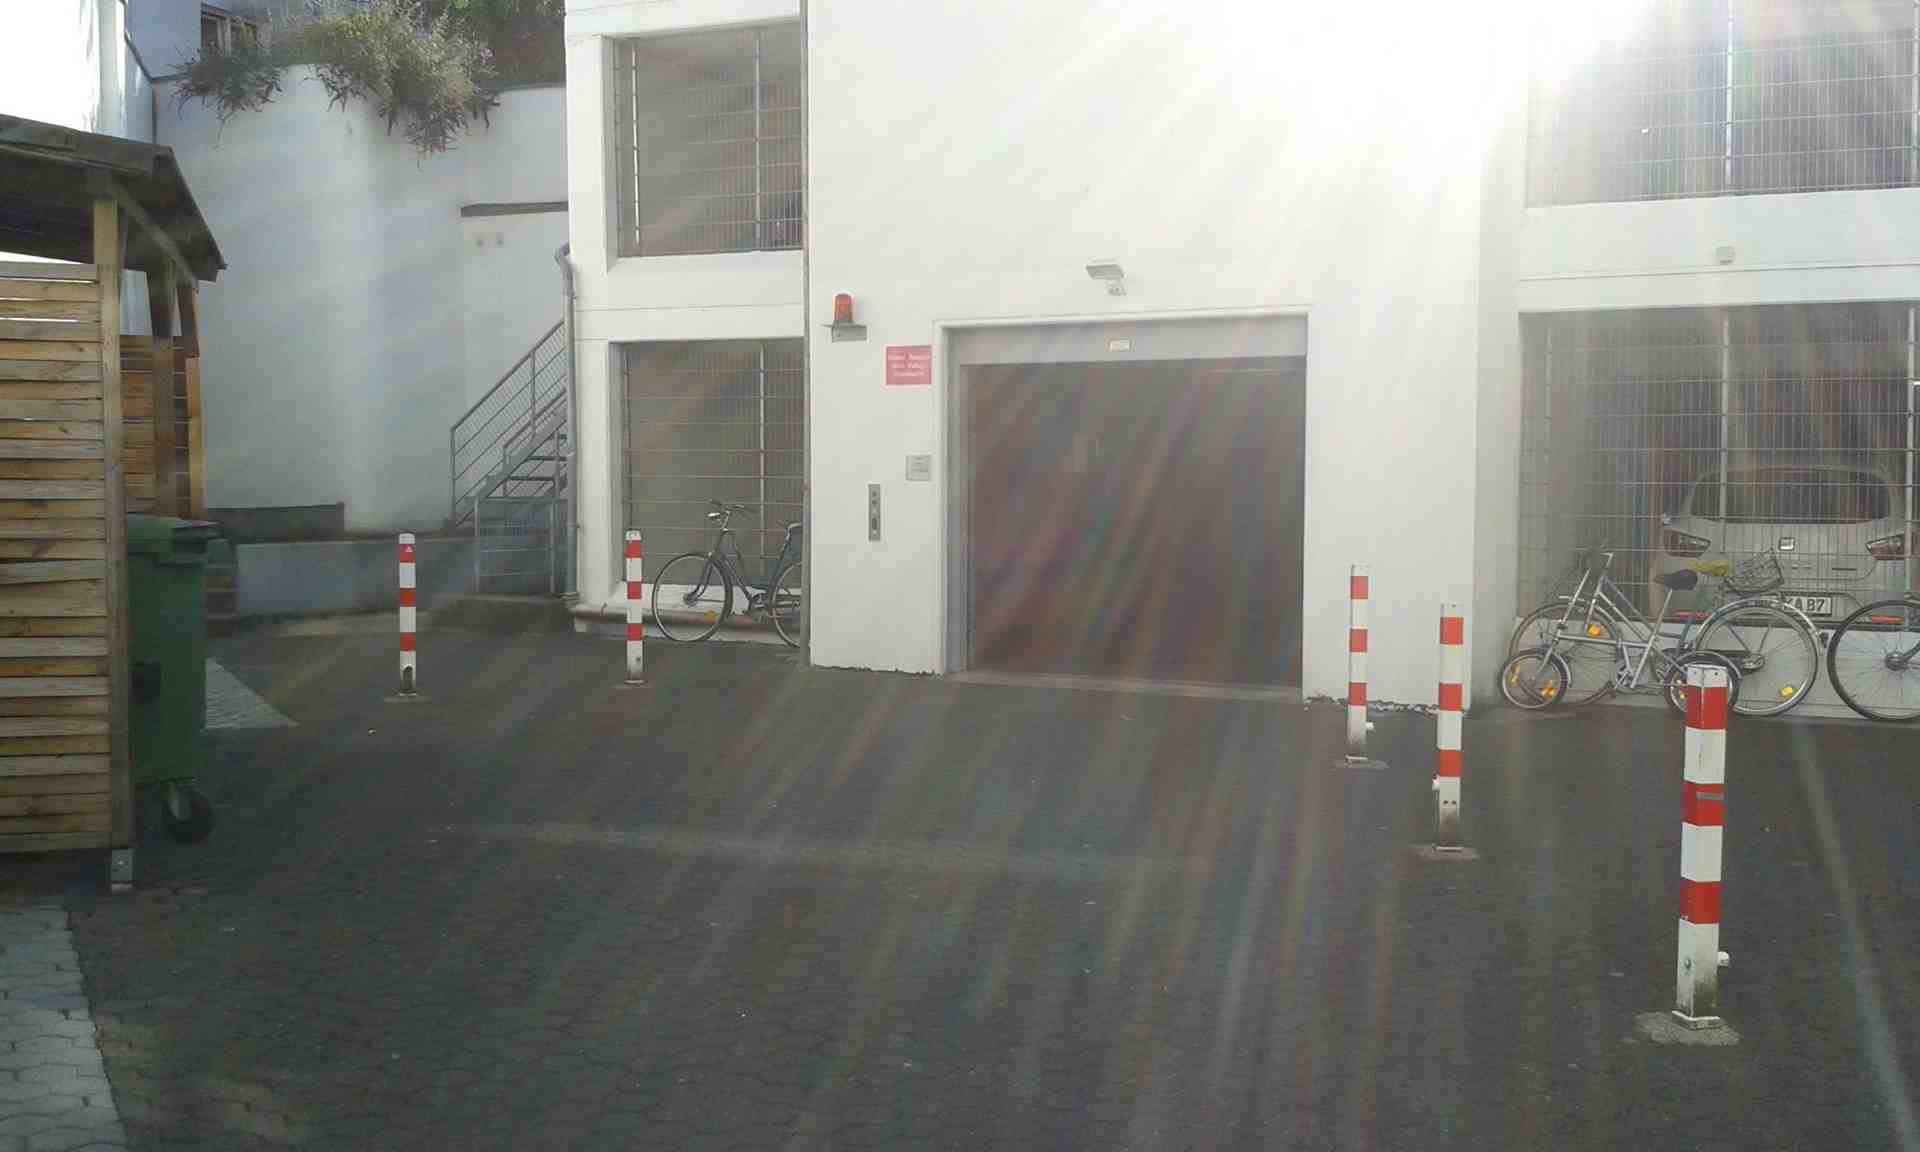 Stellplatz/Garage im UG in Kölner Innenstadt (Zülpi/Barba) - Mauritiuswall, 50676 Köln - Foto 1 von 3